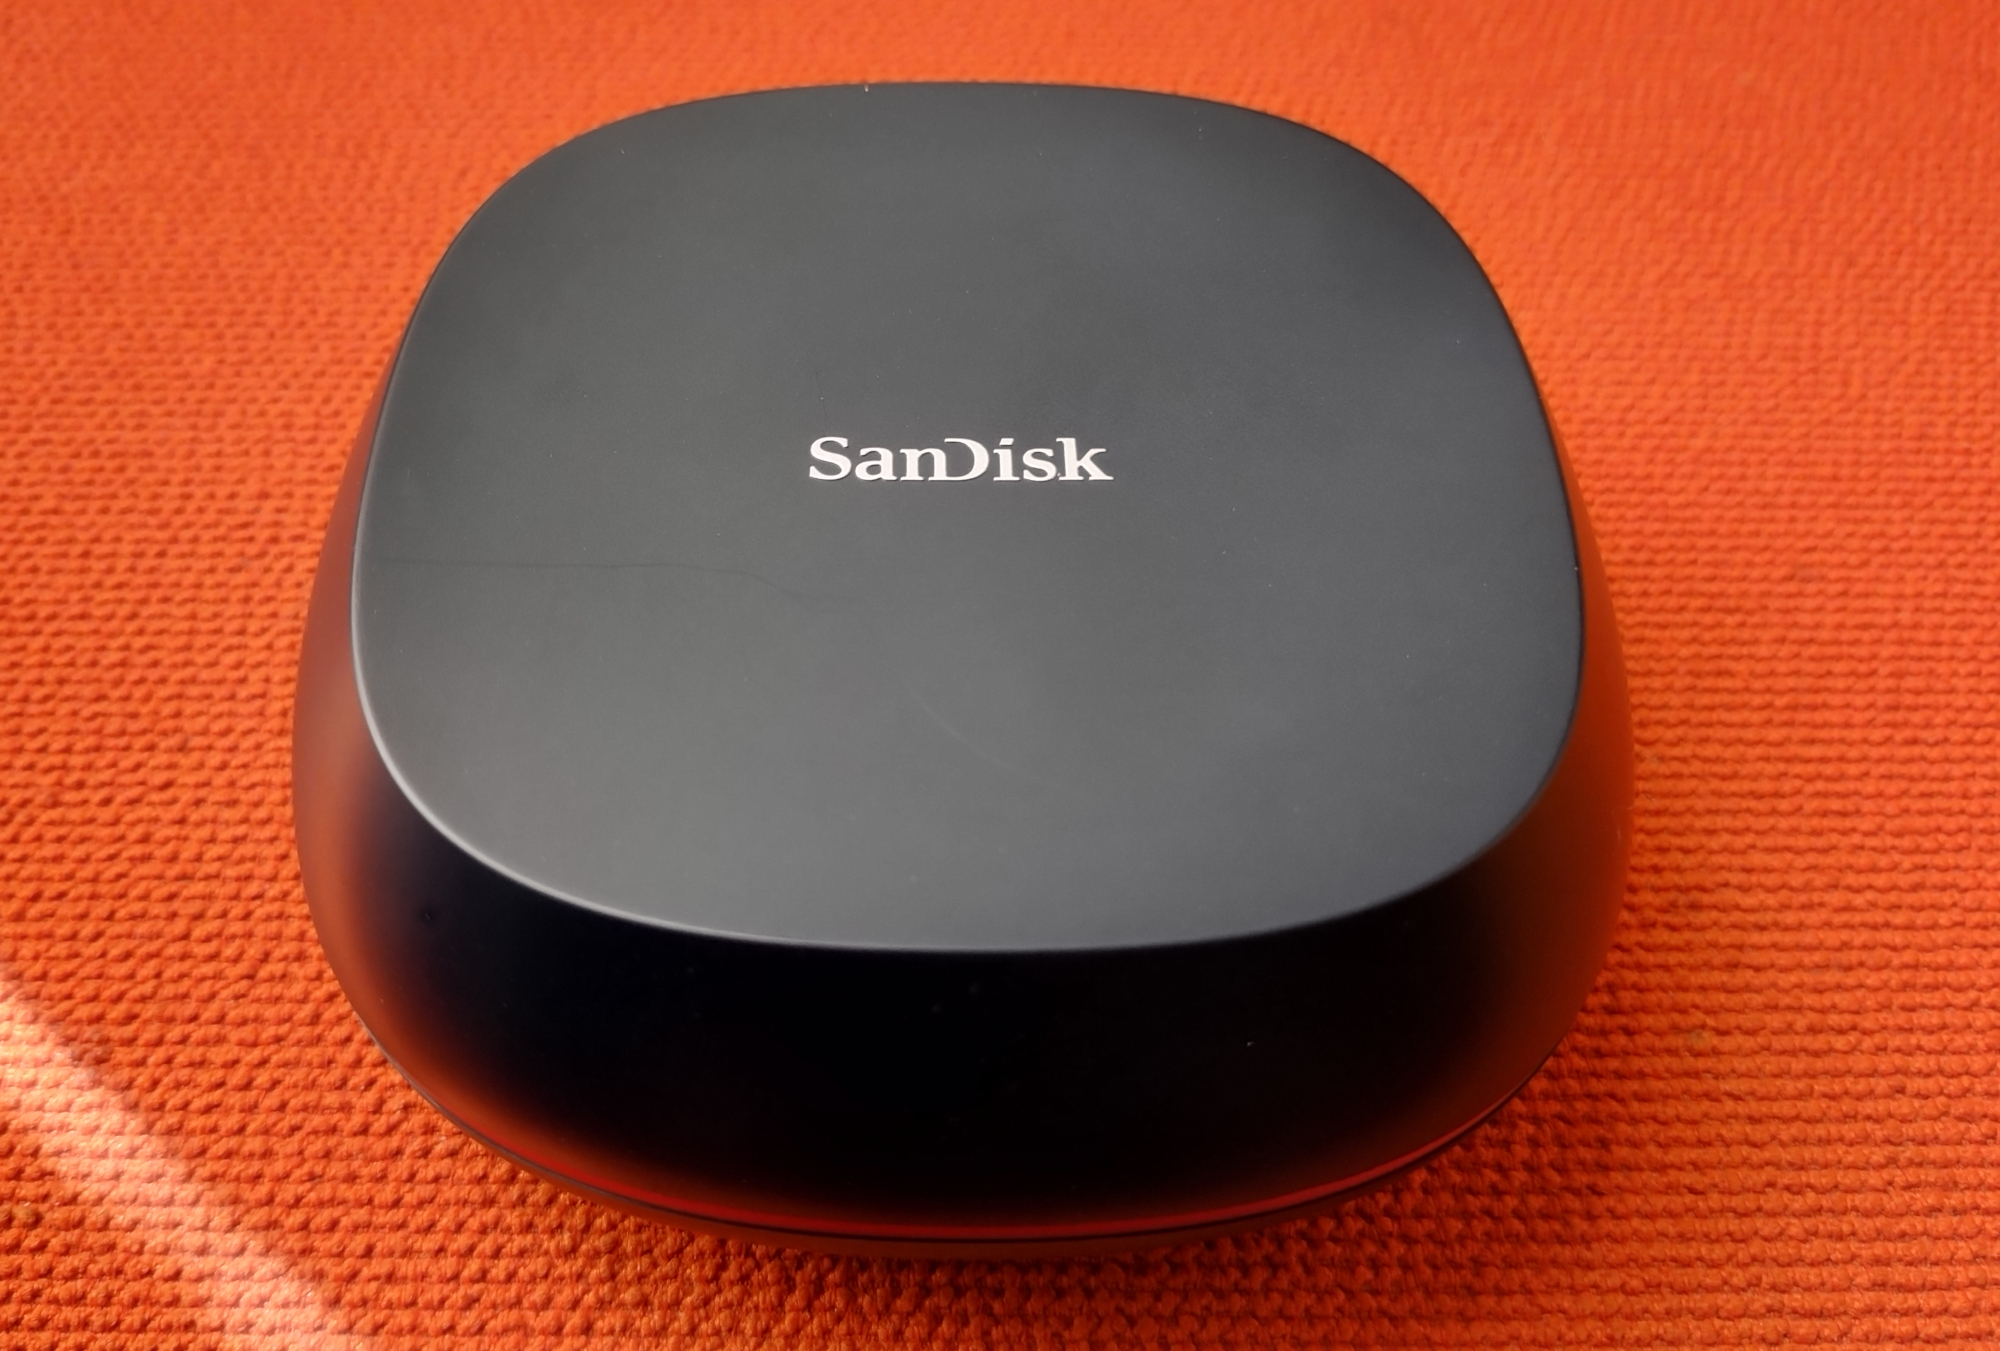 SanDisk Desk Drive 10Gbps USB SSD -  Best external SSD for backups